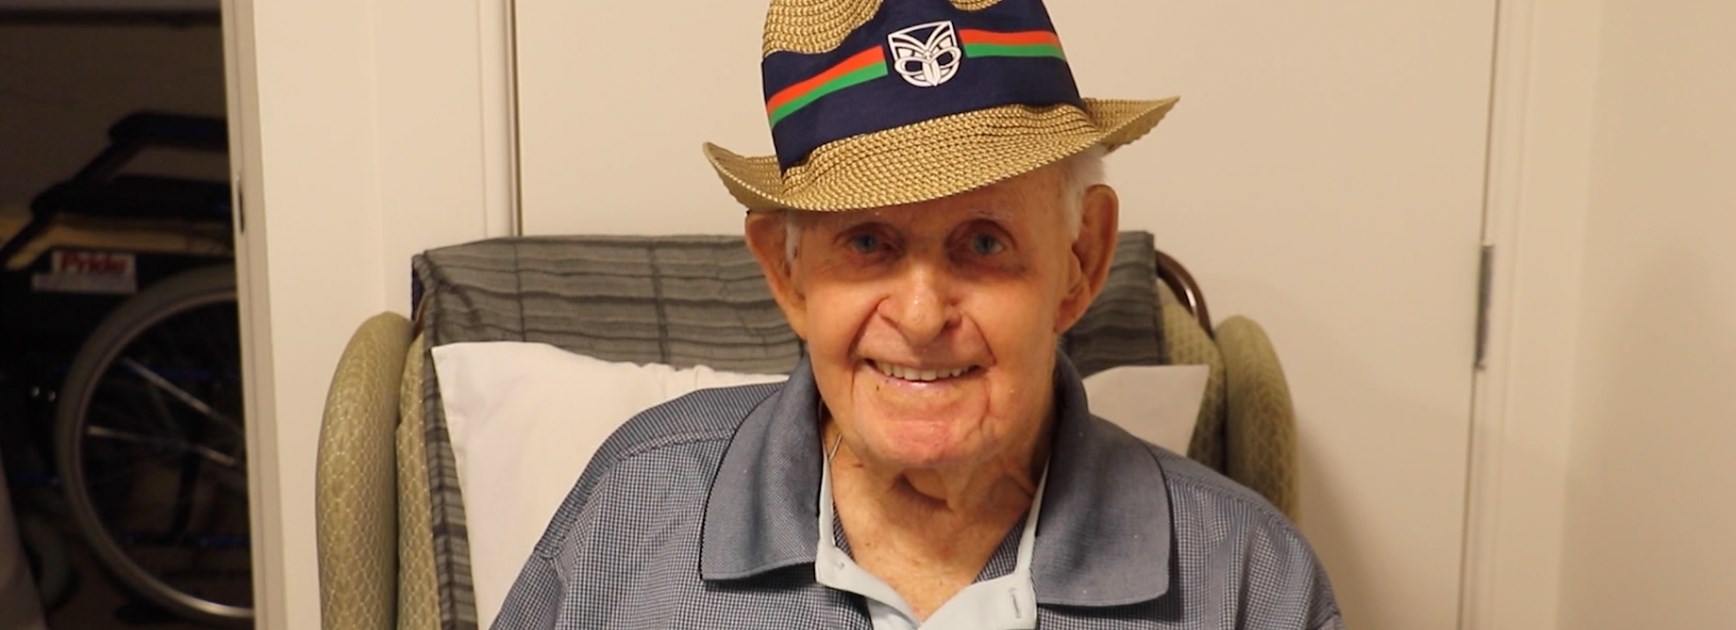 New honour for oldest living Kiwi